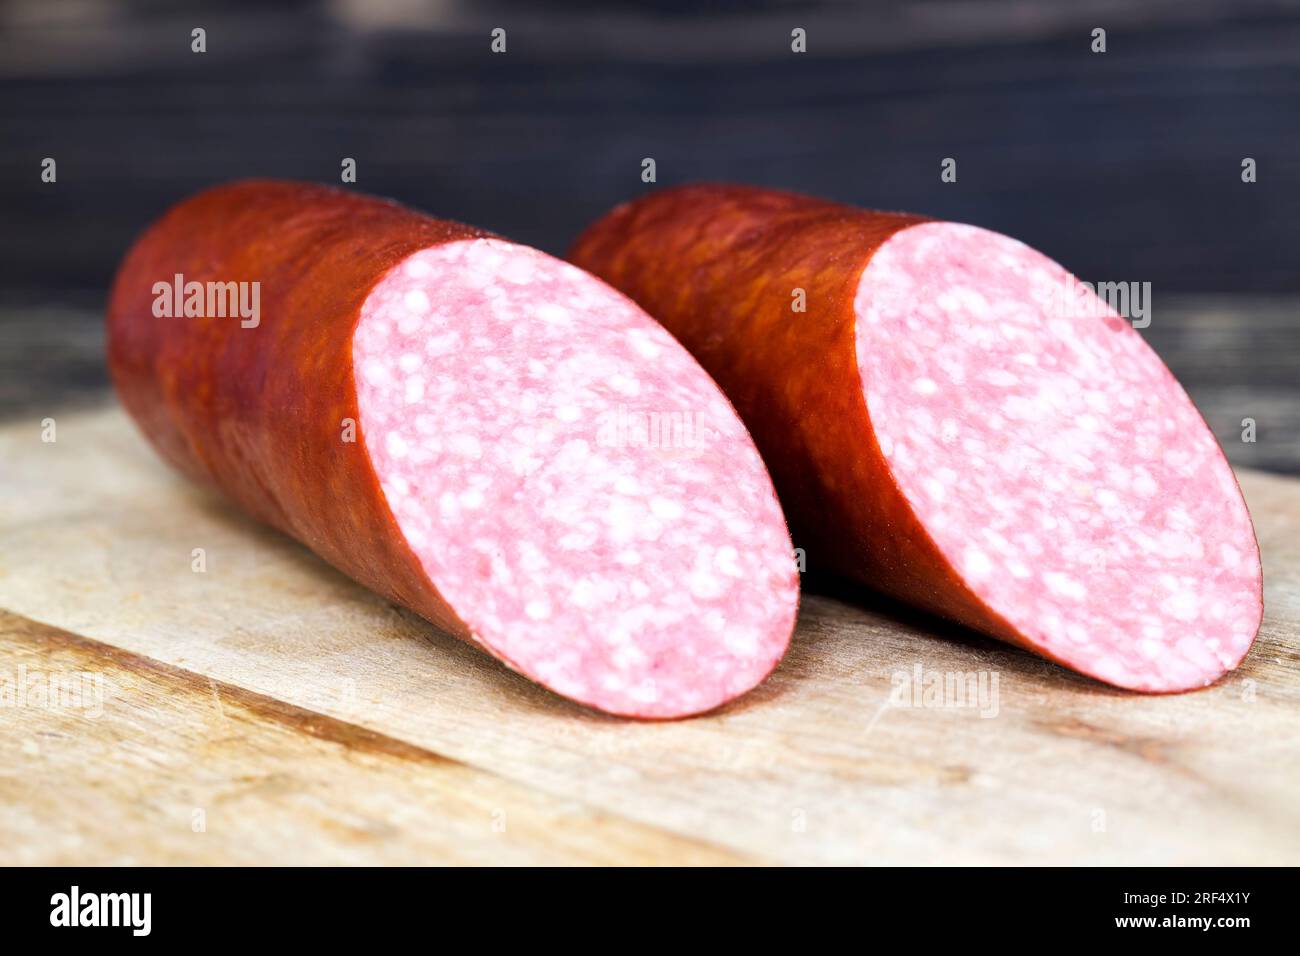 salsiccia a fette durante la preparazione dei piatti a base di carne, dettagli dei prodotti a base di carne di produzione industriale Foto Stock